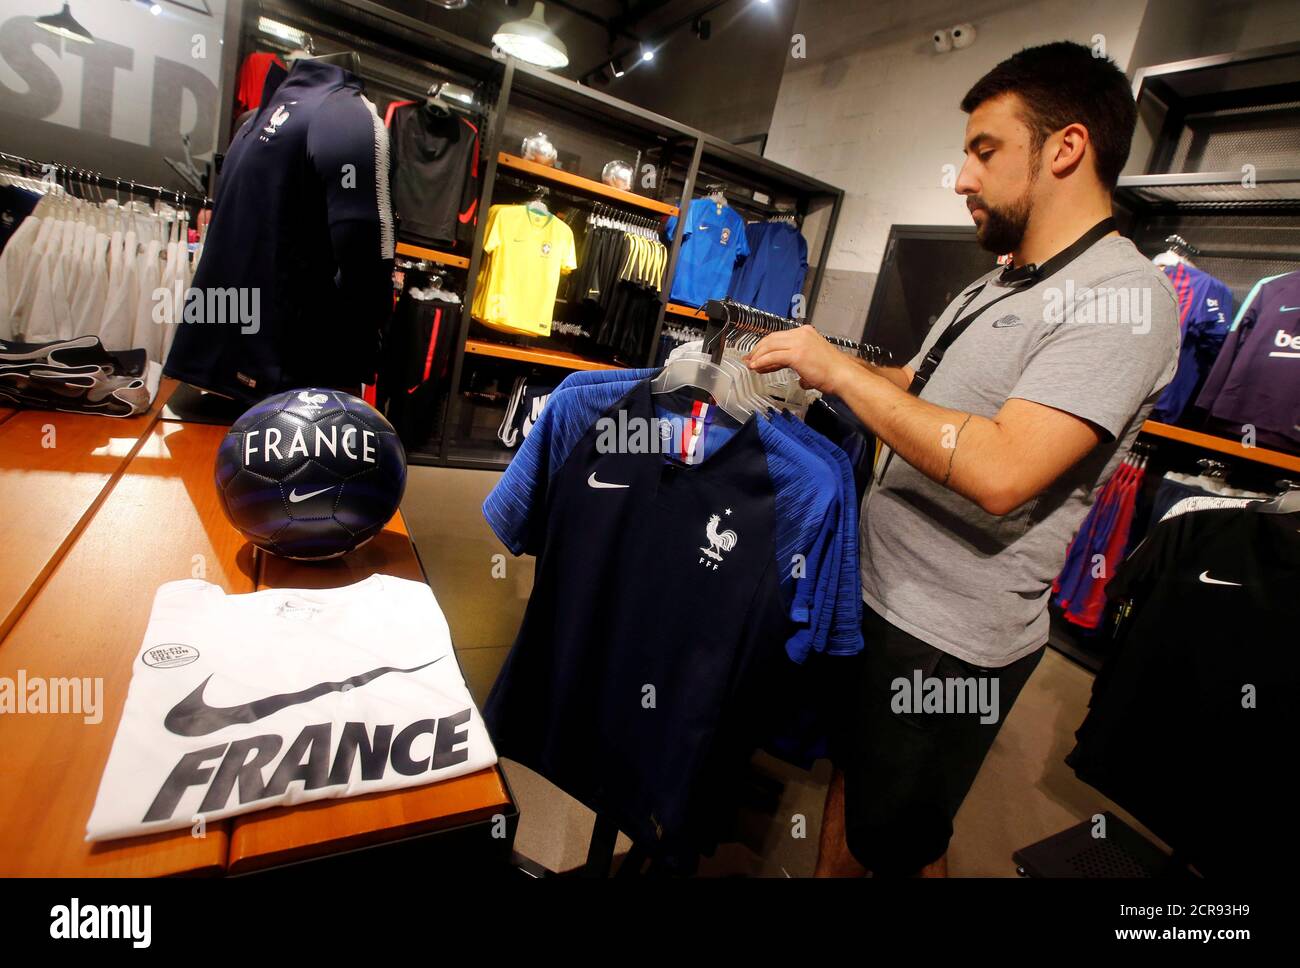 Les maillots de football de l'équipe de France sont exposés dans un magasin  d'articles de sport Nike à Marseille, en France, le 8 juin 2018. Le  football français a remporté un concours